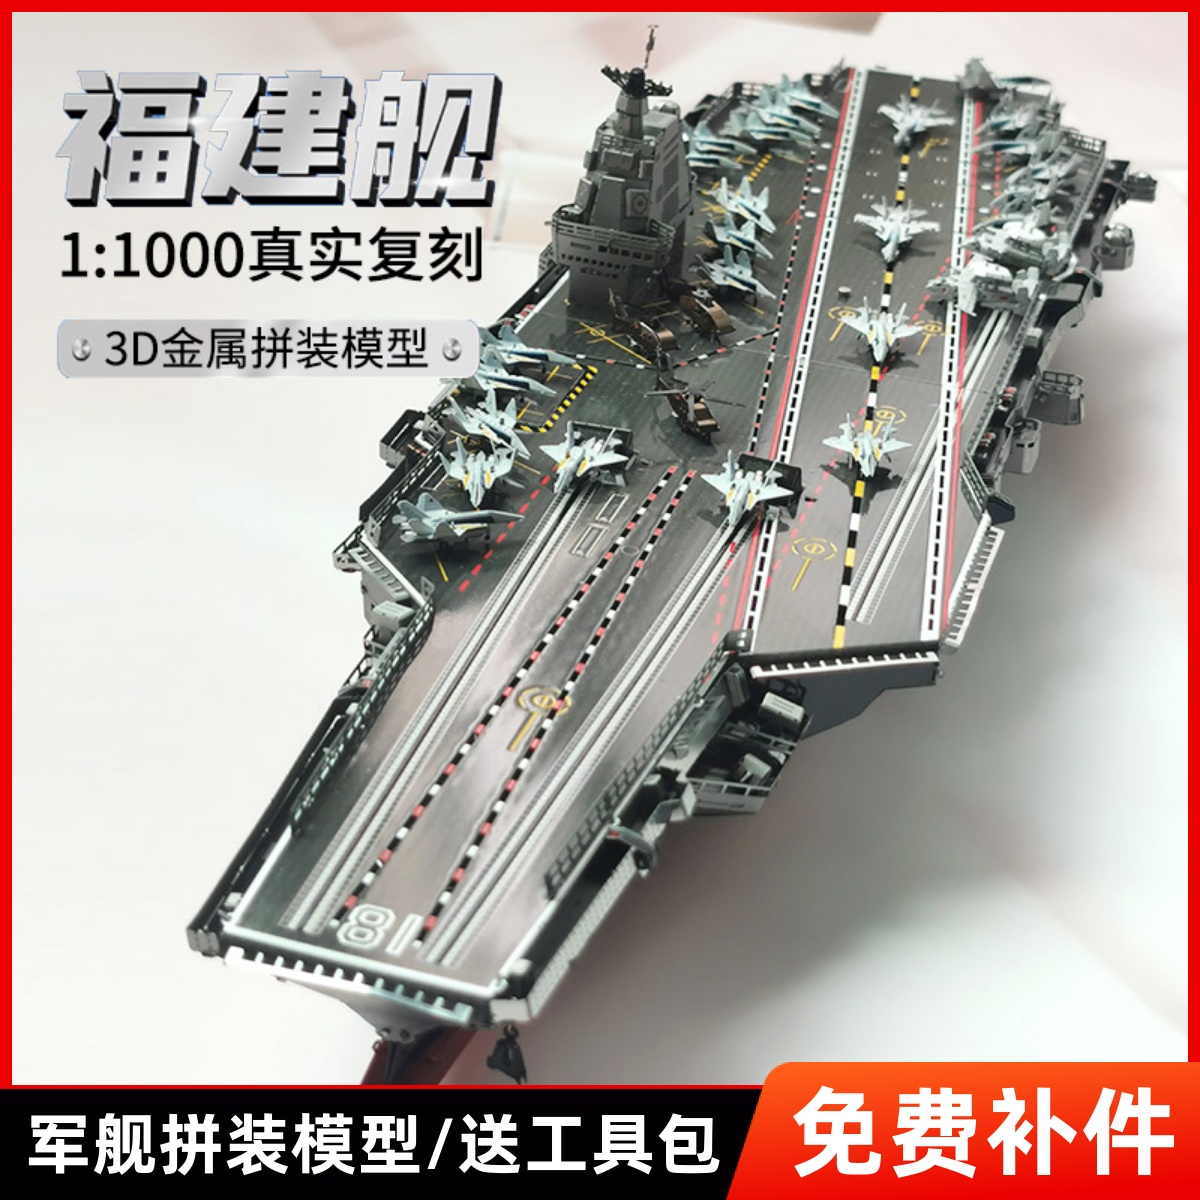 钢达福建舰航空母舰玩具3d金属拼图军舰军事拼装模型成人手工男孩